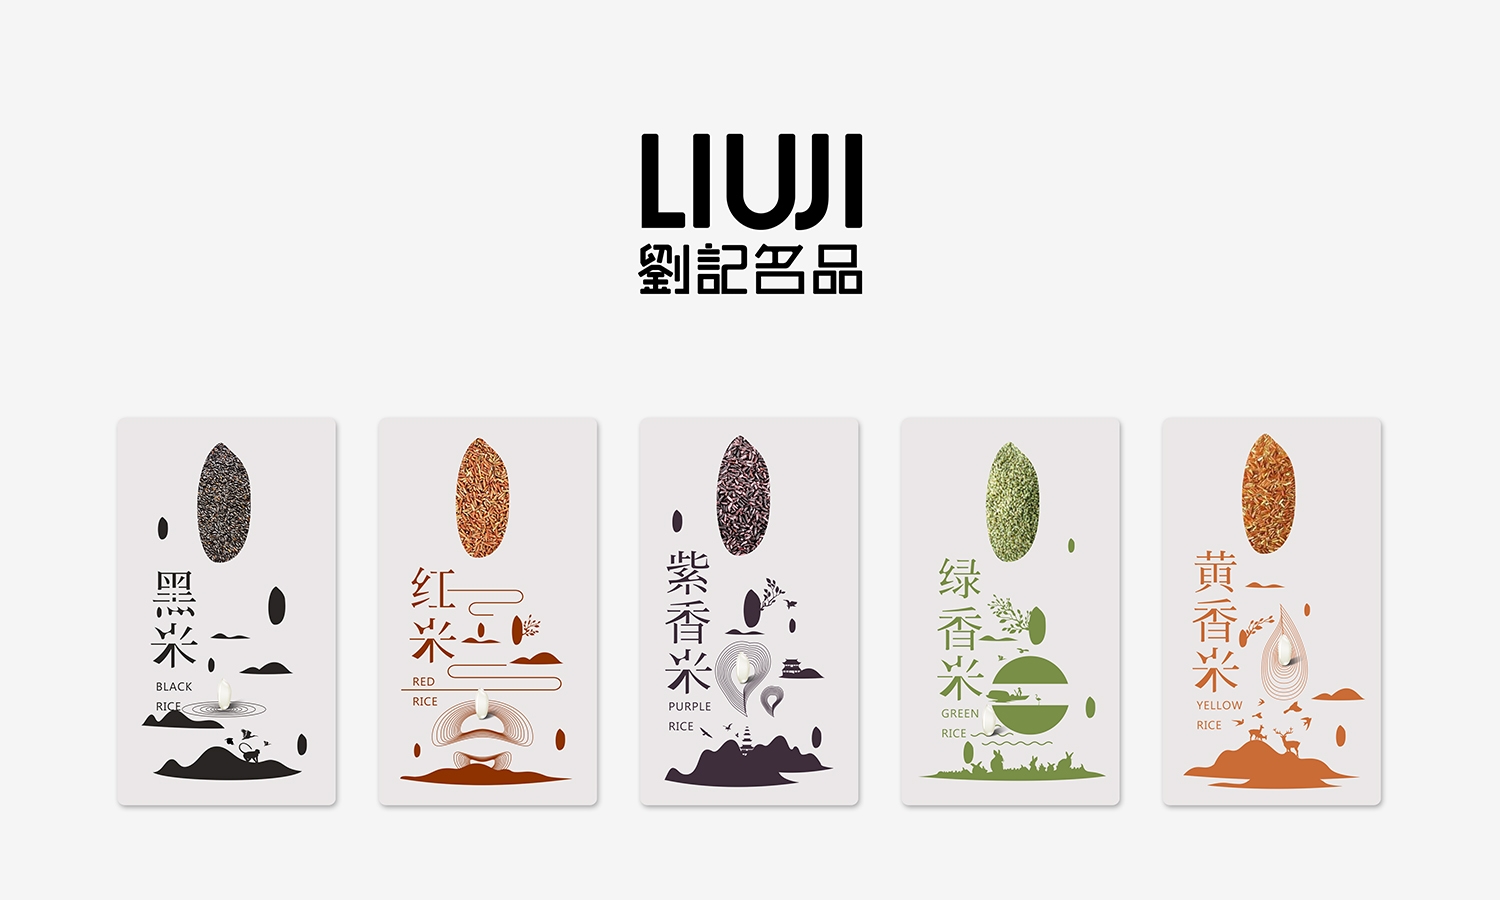 刘记名品五香大米农副产品包装设计西安厚启设计